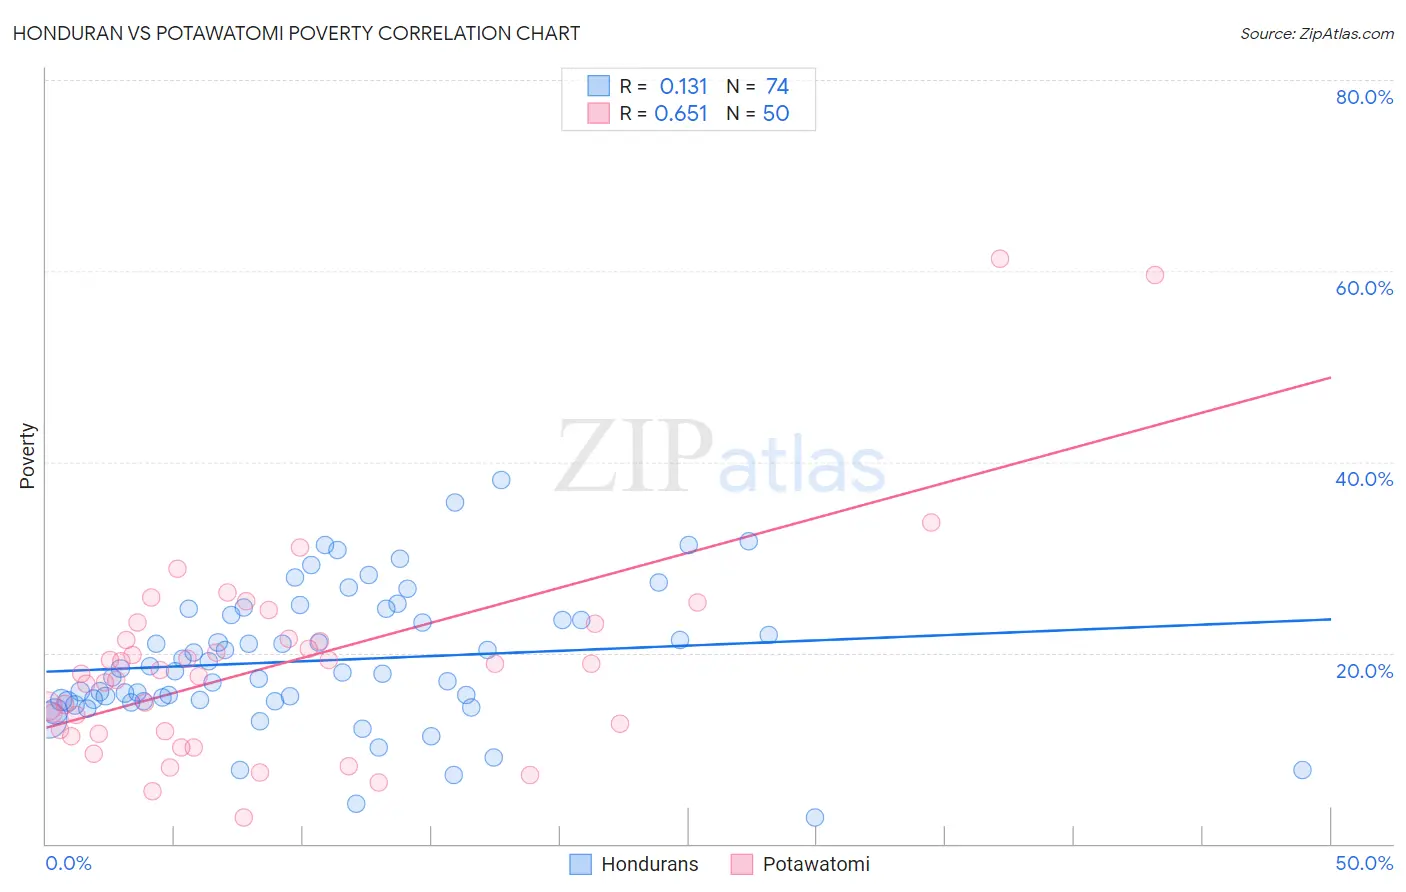 Honduran vs Potawatomi Poverty